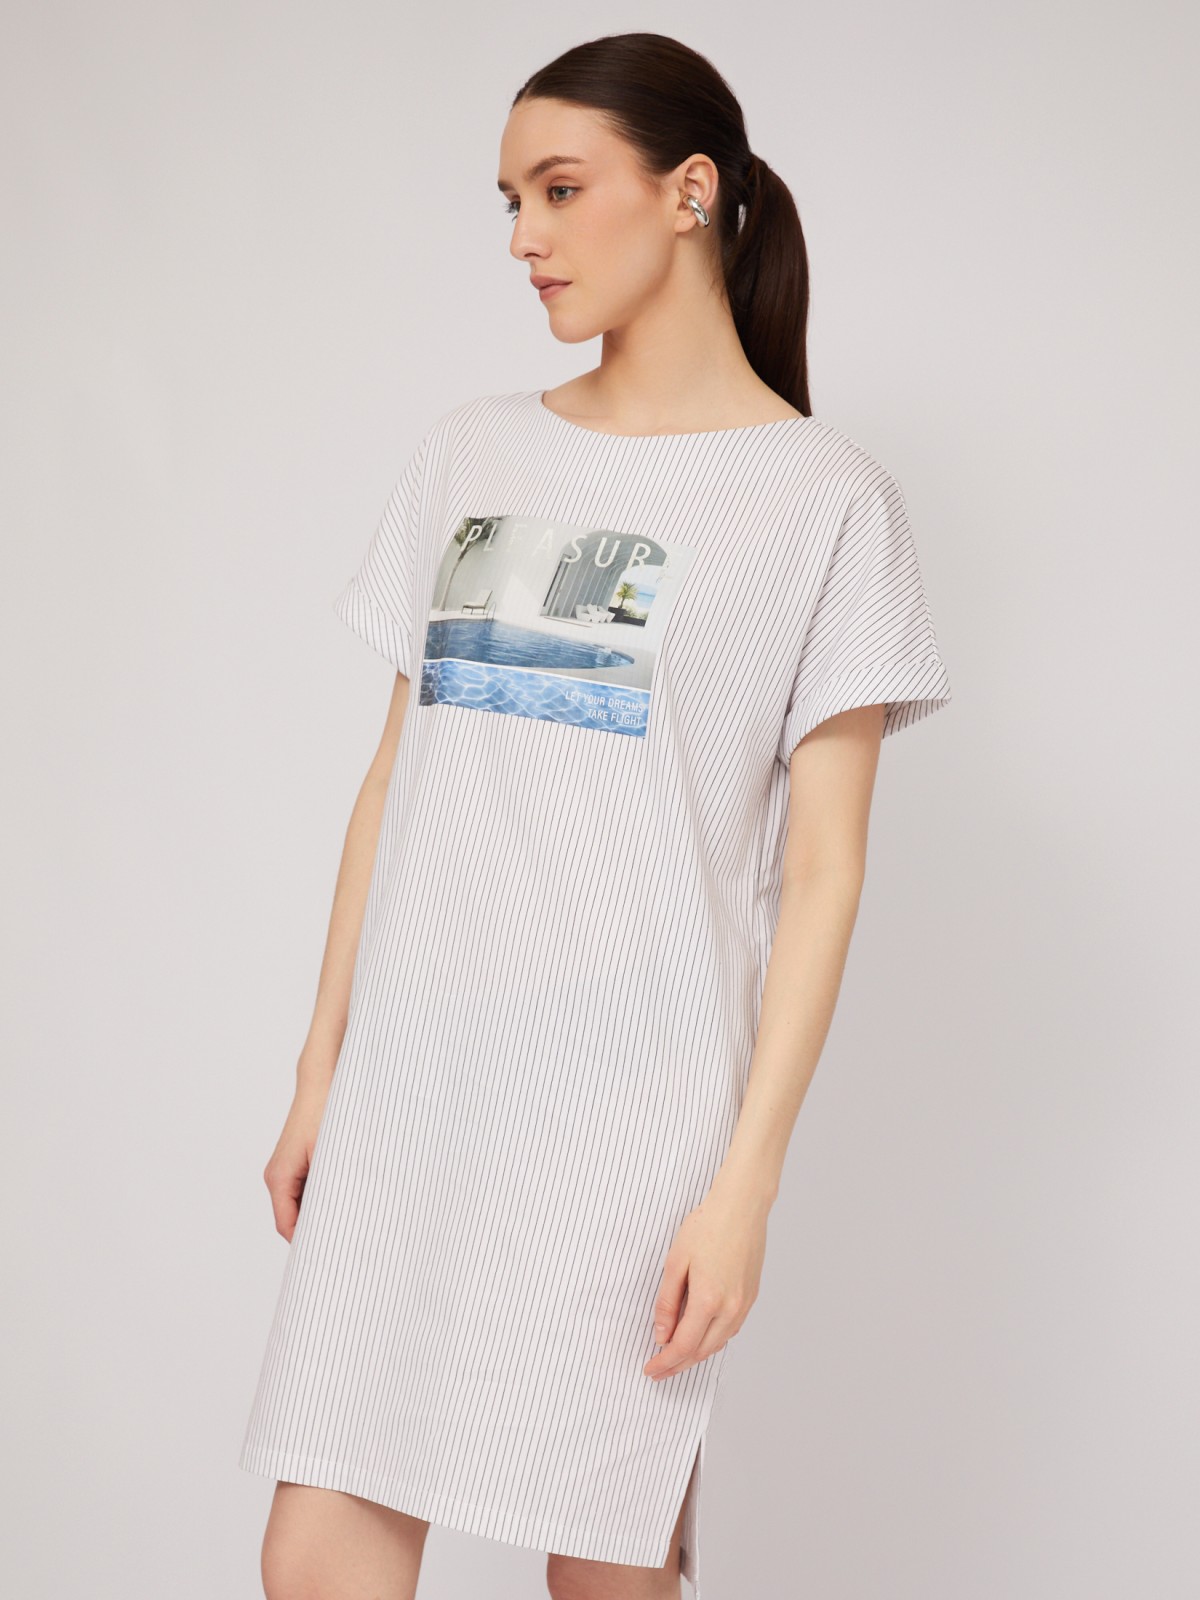 Платье-футболка из хлопка с принтом zolla 024248259593, цвет белый, размер S - фото 5